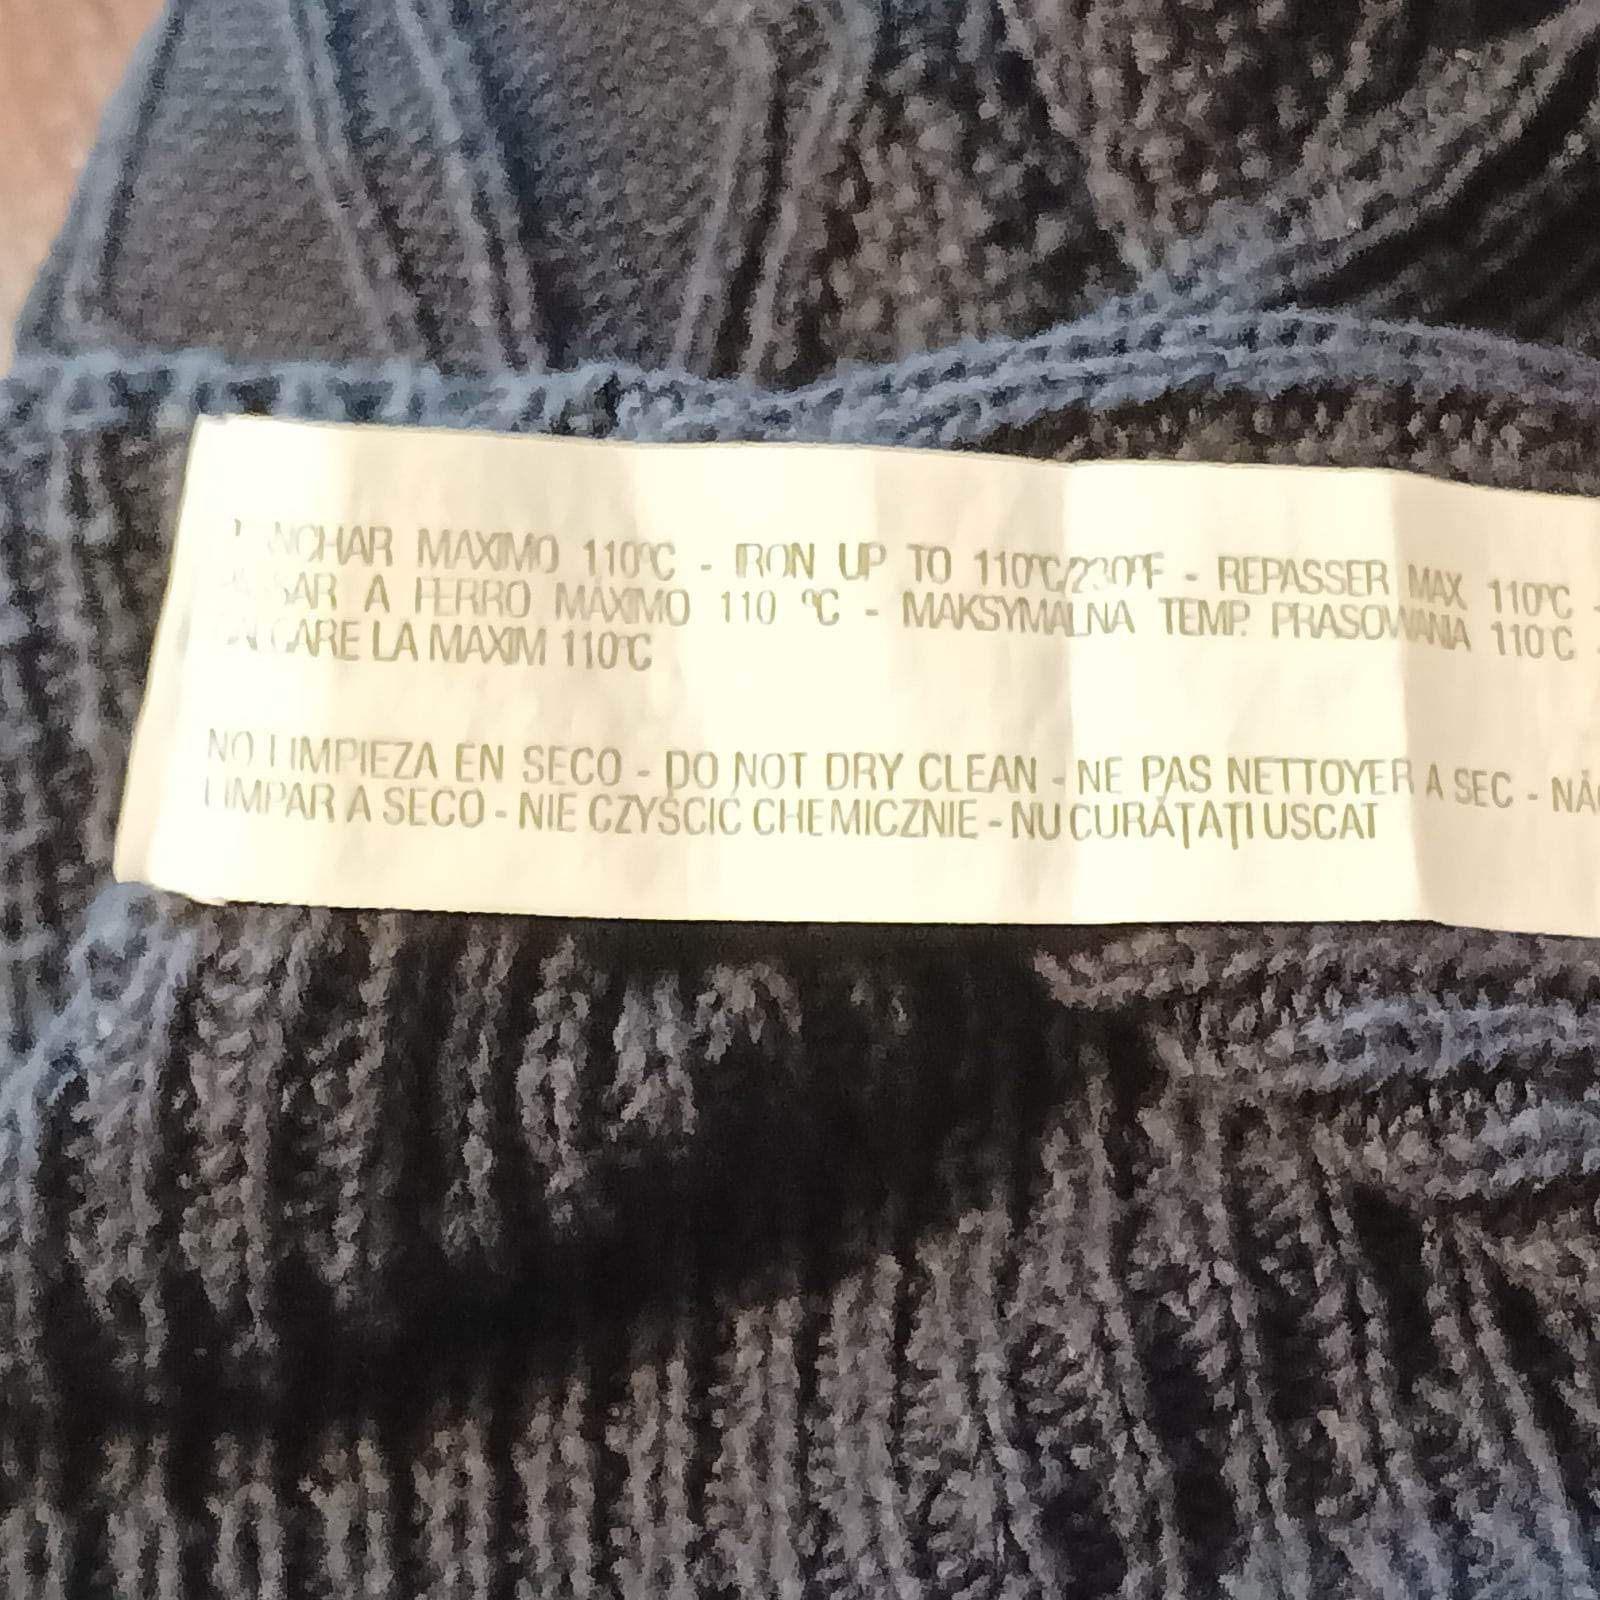 93. Sweter męski rozmiar M firmy Zara men